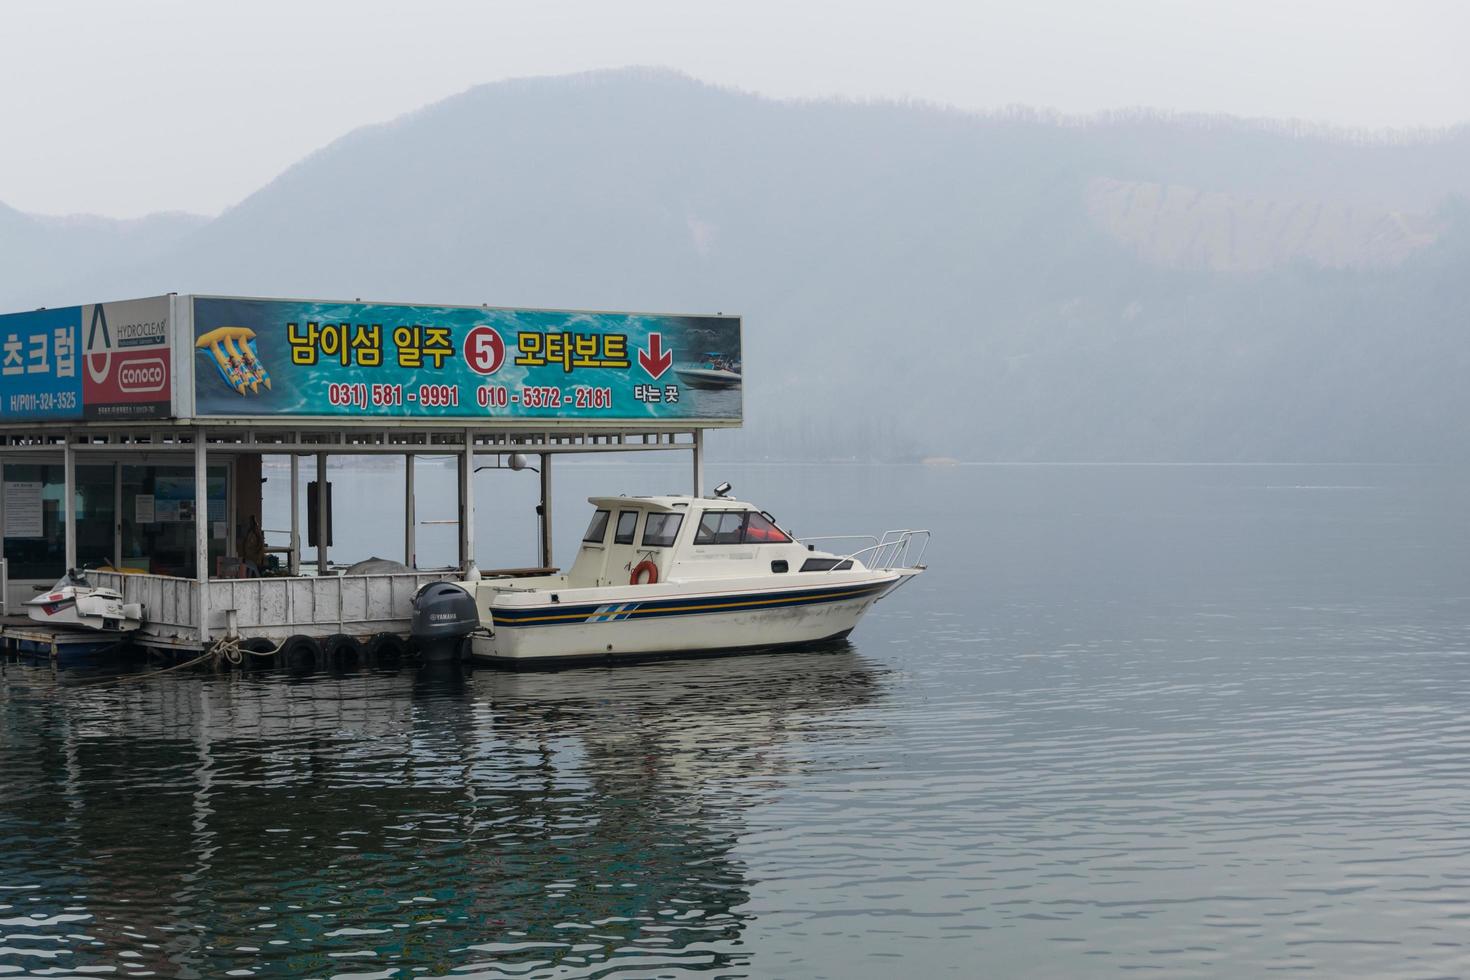 gangwon-do, corea 2016 - nave passeggeri per i turisti in tutta l'isola foto